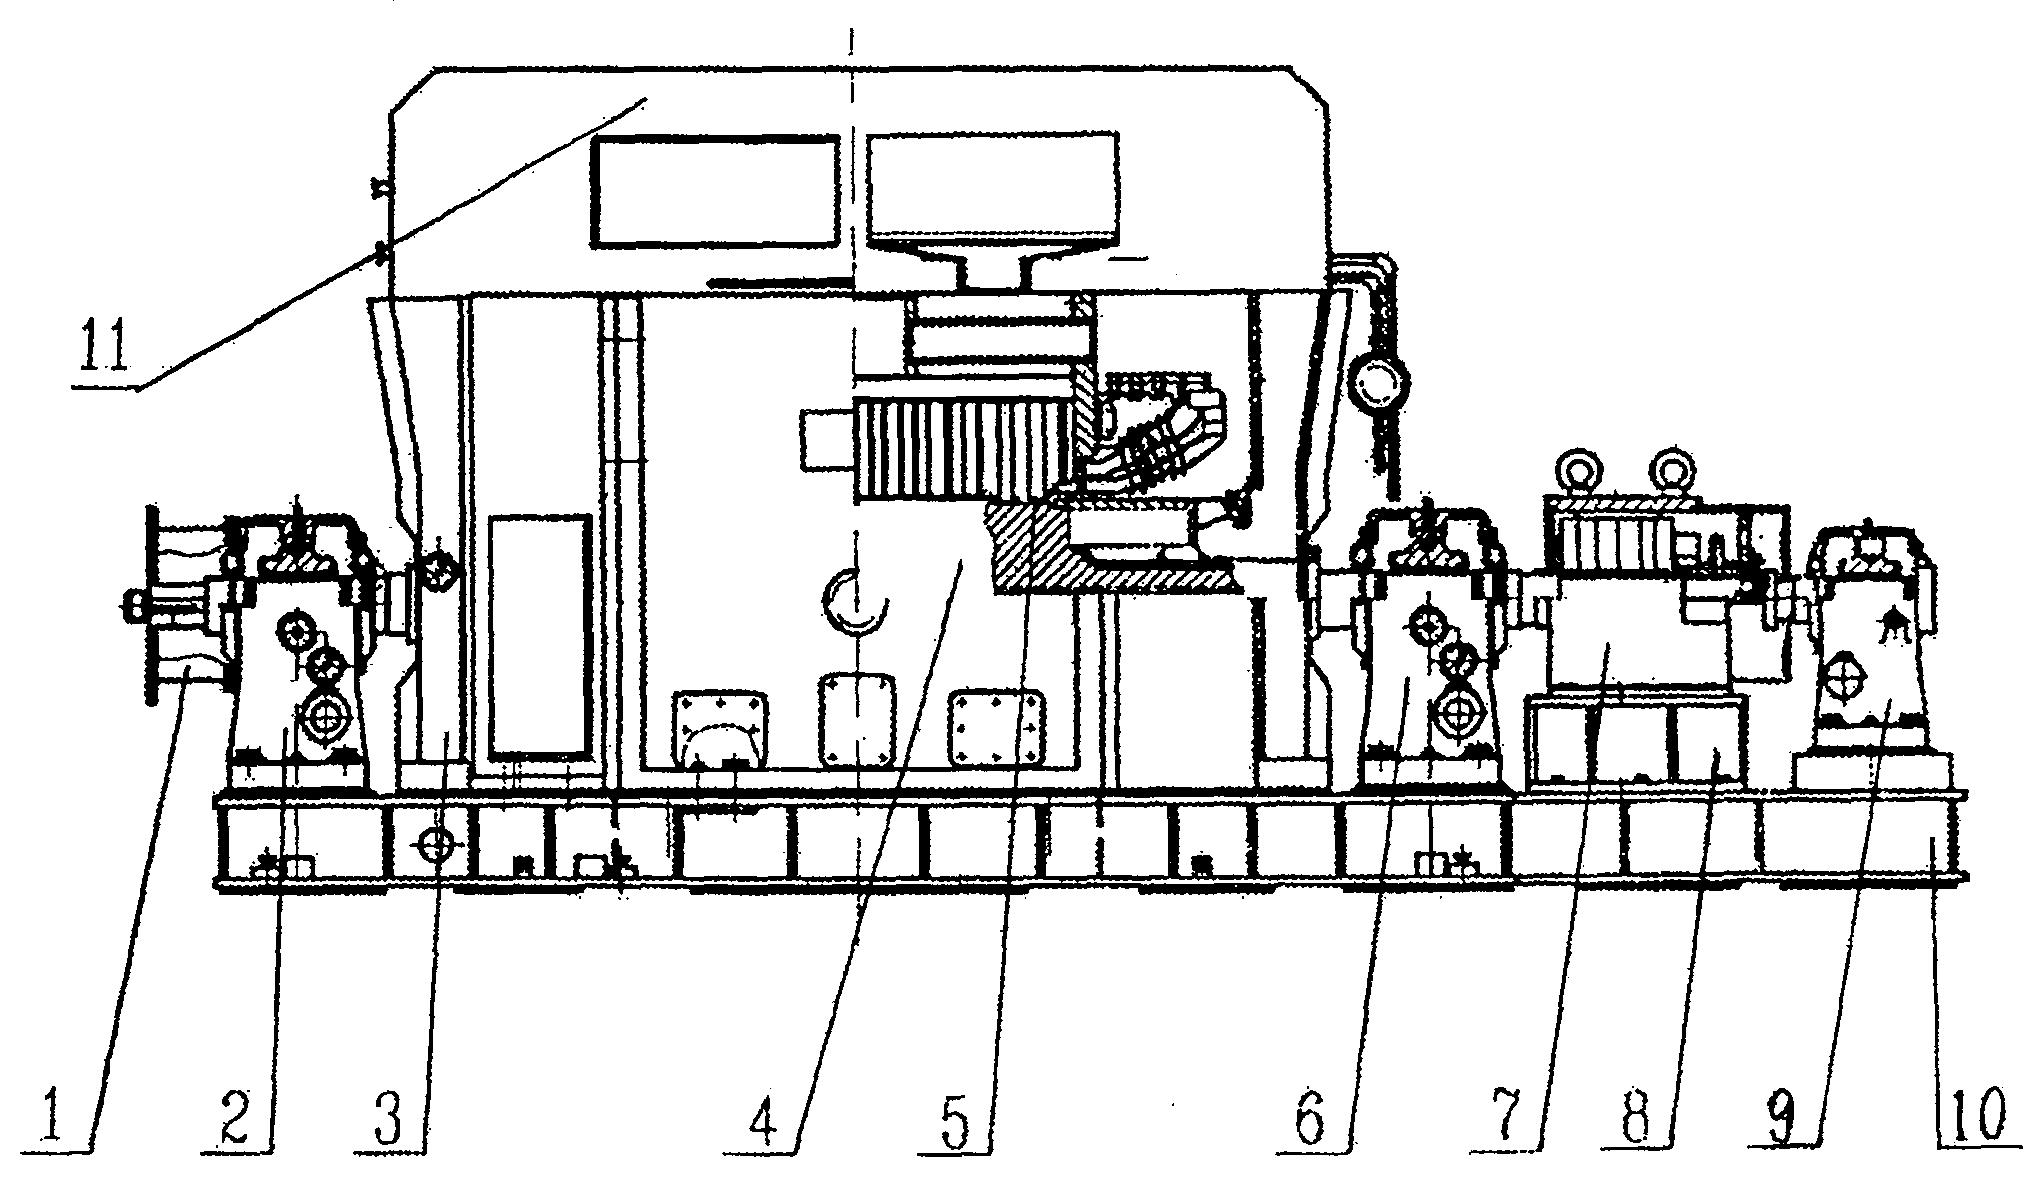 摘要附图摘要本发明公开了燃气轮发电机,它采用整体式箱体结构,发电机